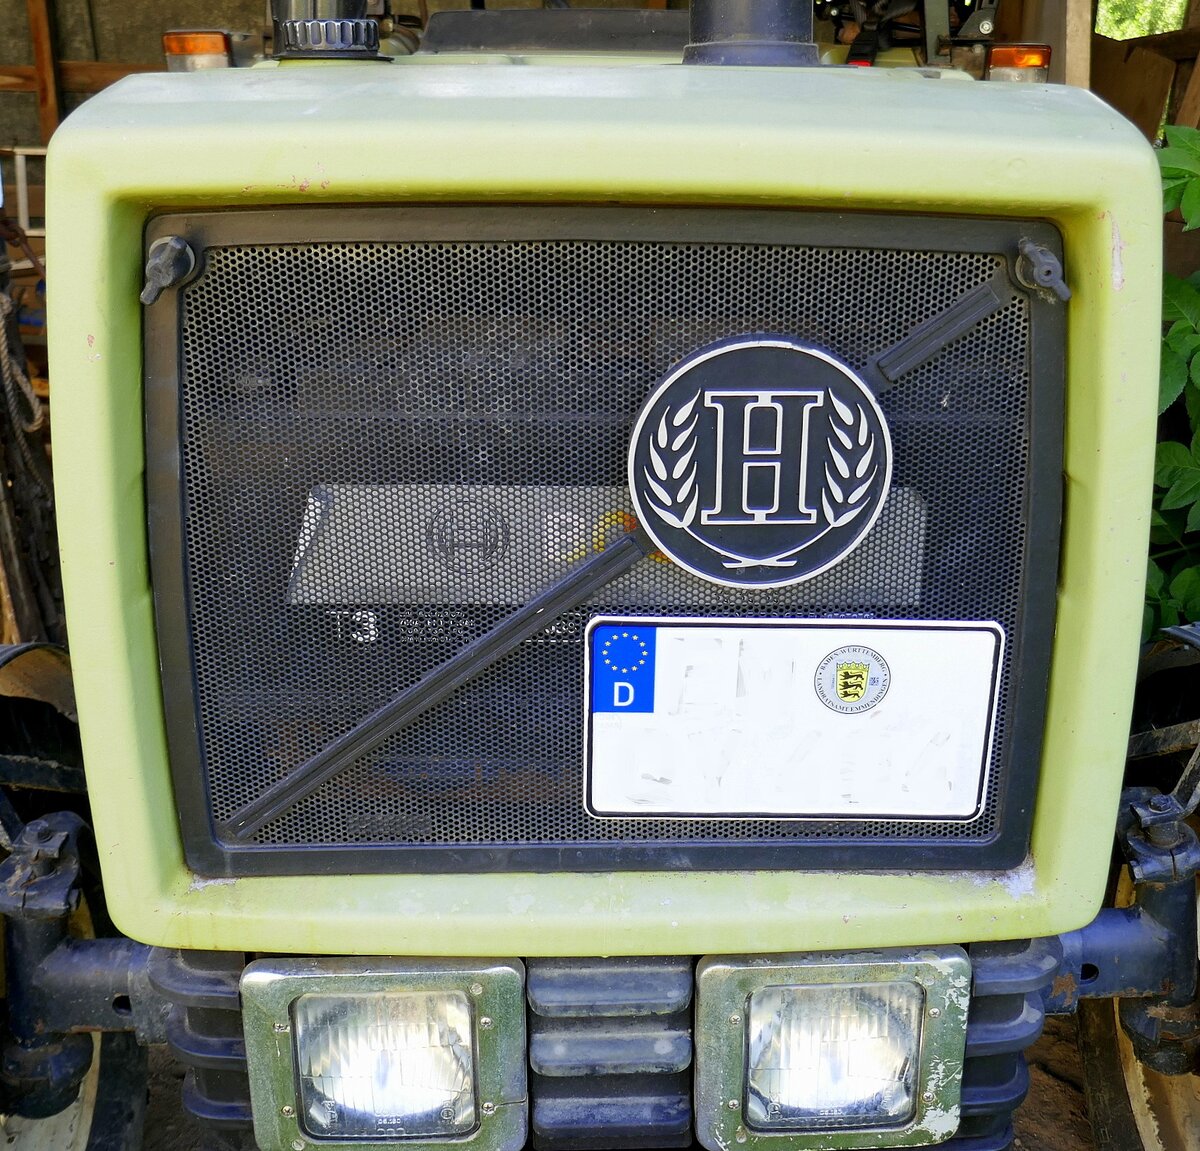 Hürlimann H 345, Kühlerfront mit Emblem, Juni 2022